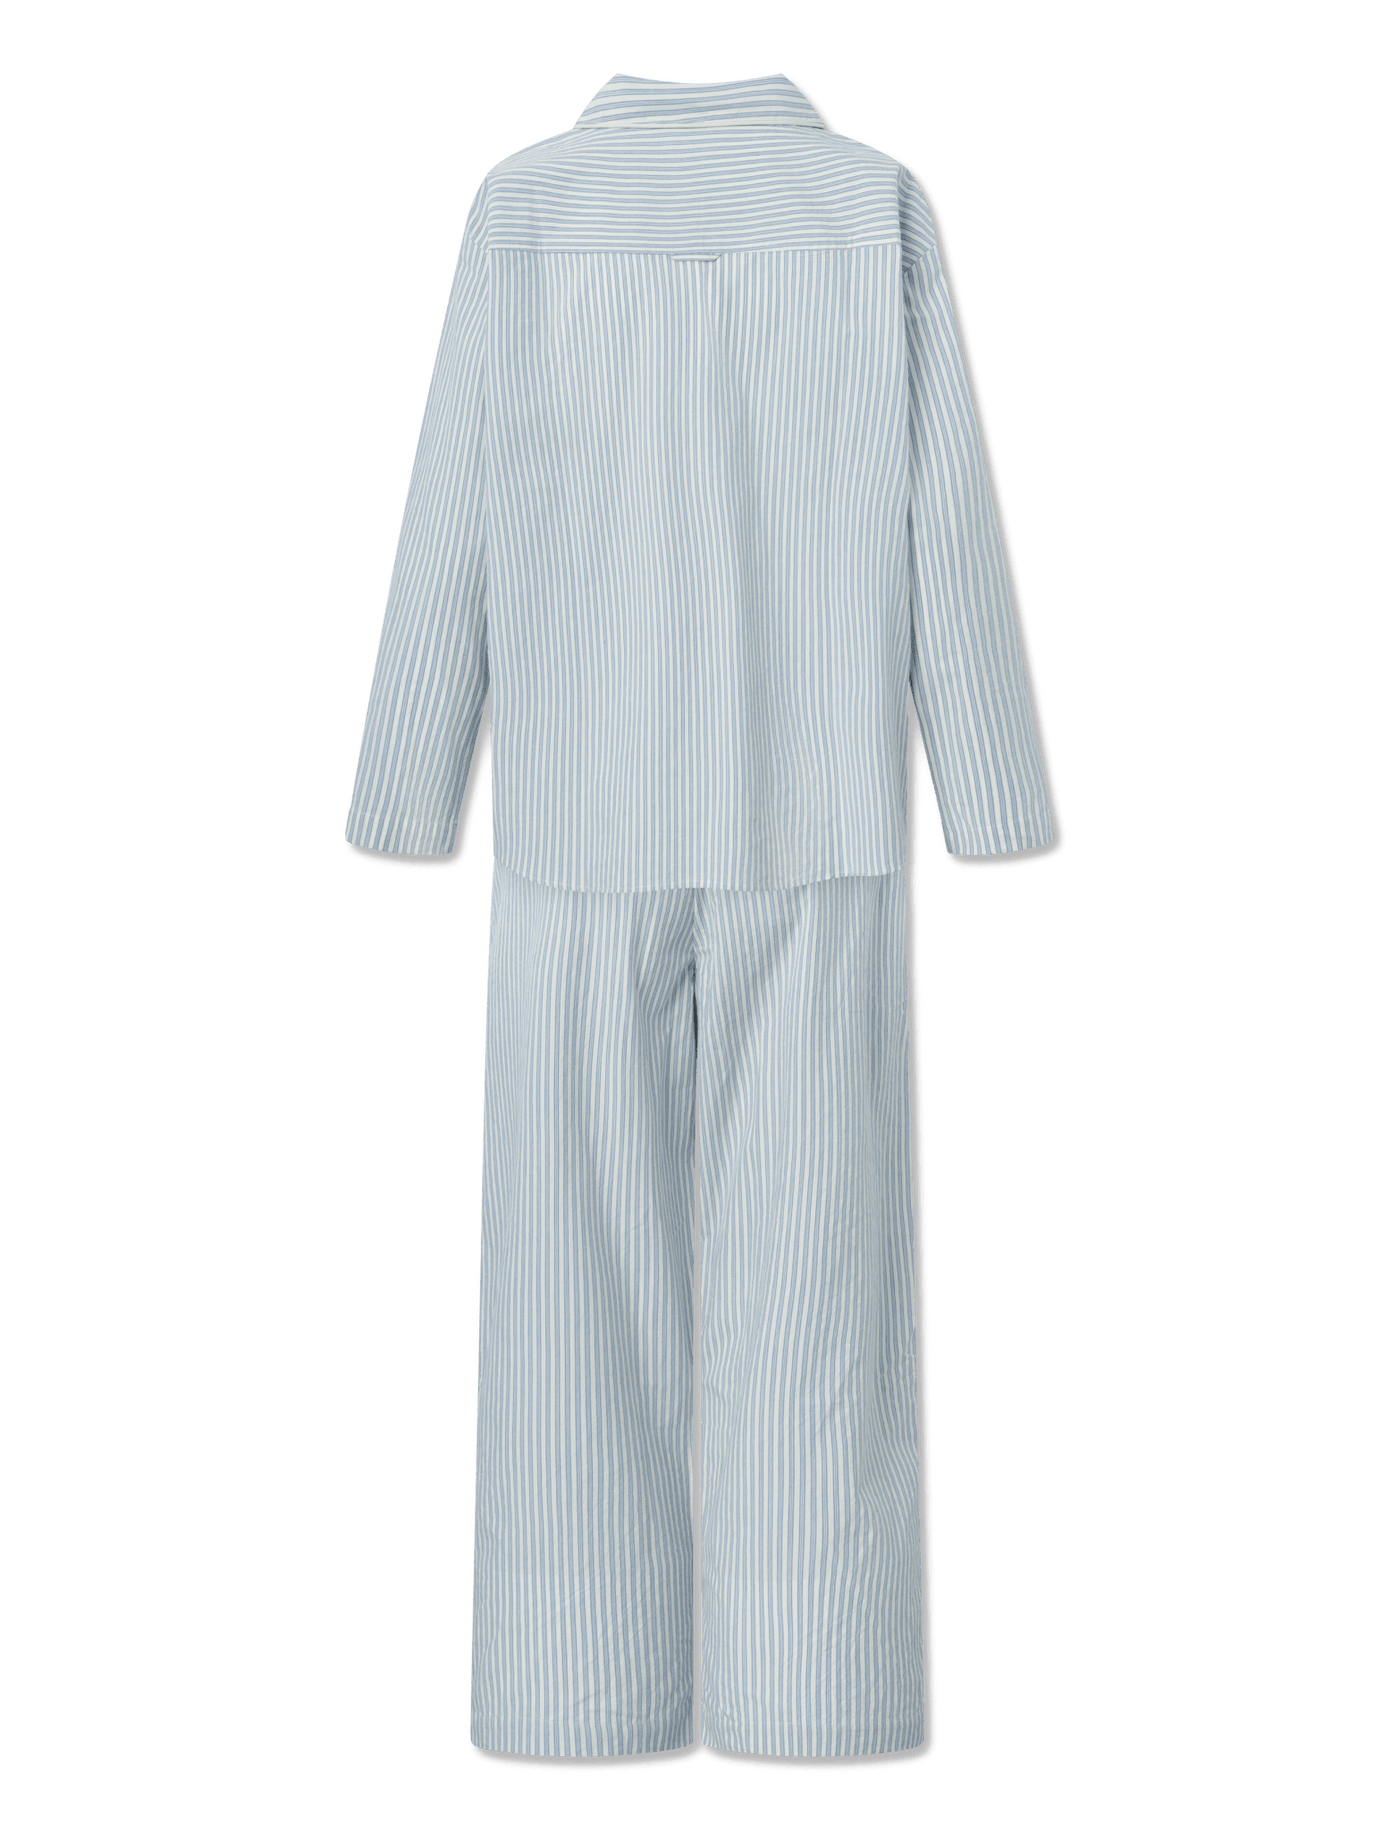 Edith Pajama - BEACH STRIPE